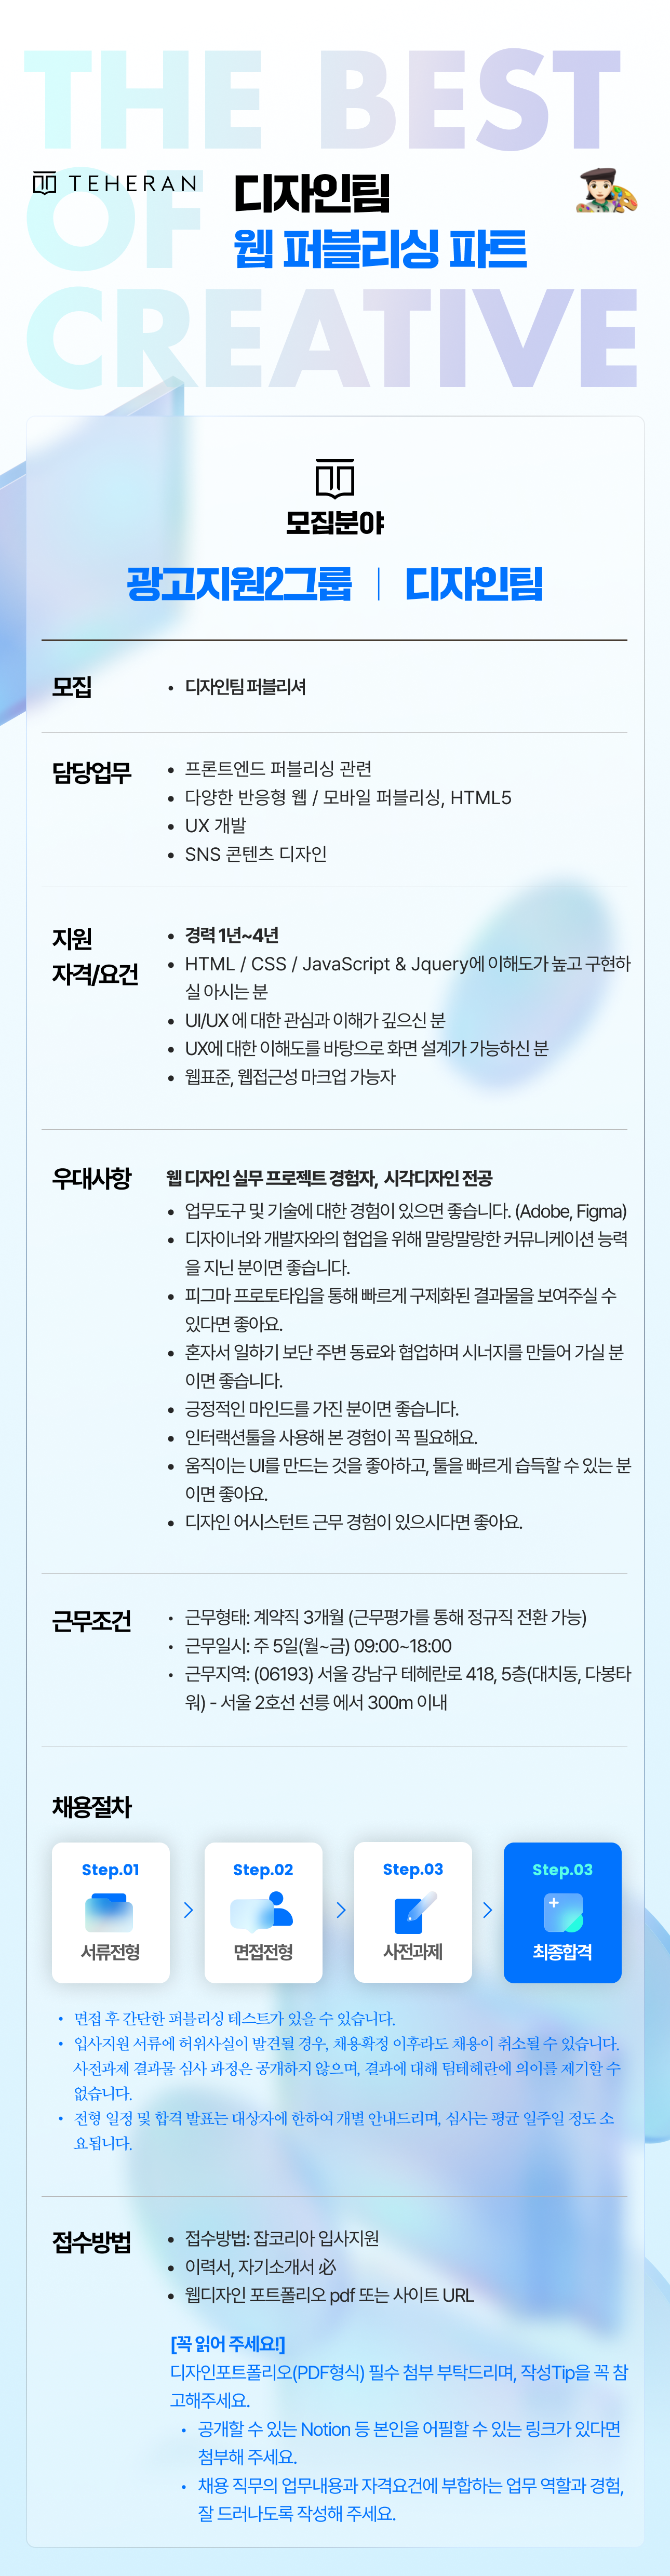 design_publisher_02_jobkorea.png